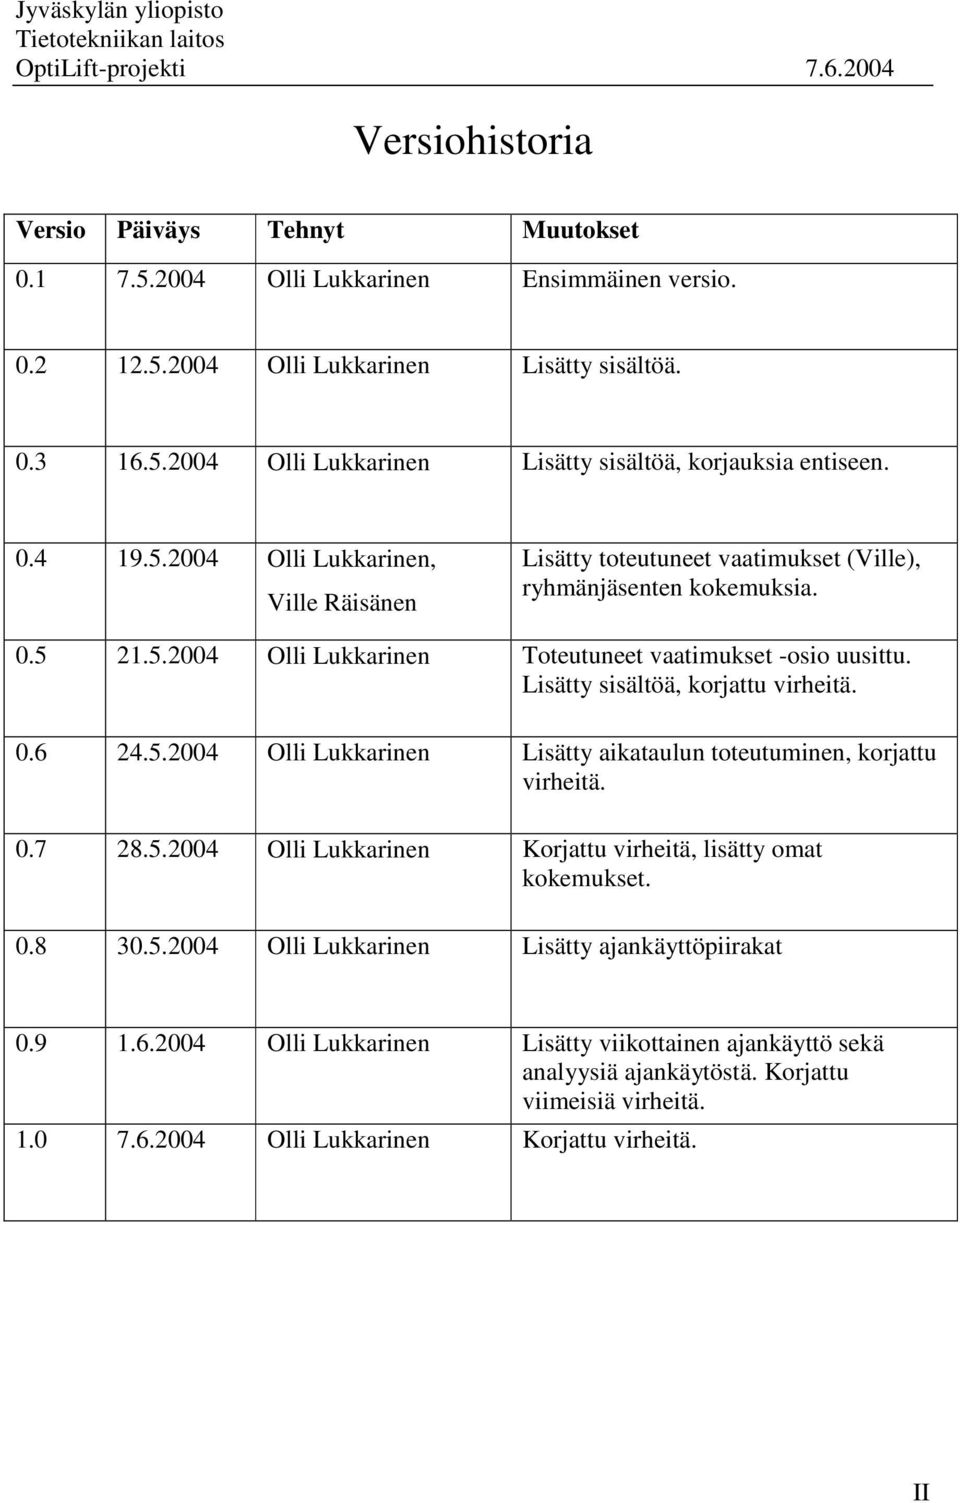 Lisätty sisältöä, korjattu virheitä. 0.6 24.5.2004 Olli Lukkarinen Lisätty aikataulun toteutuminen, korjattu virheitä. 0.7 28.5.2004 Olli Lukkarinen Korjattu virheitä, lisätty omat kokemukset. 0.8 30.